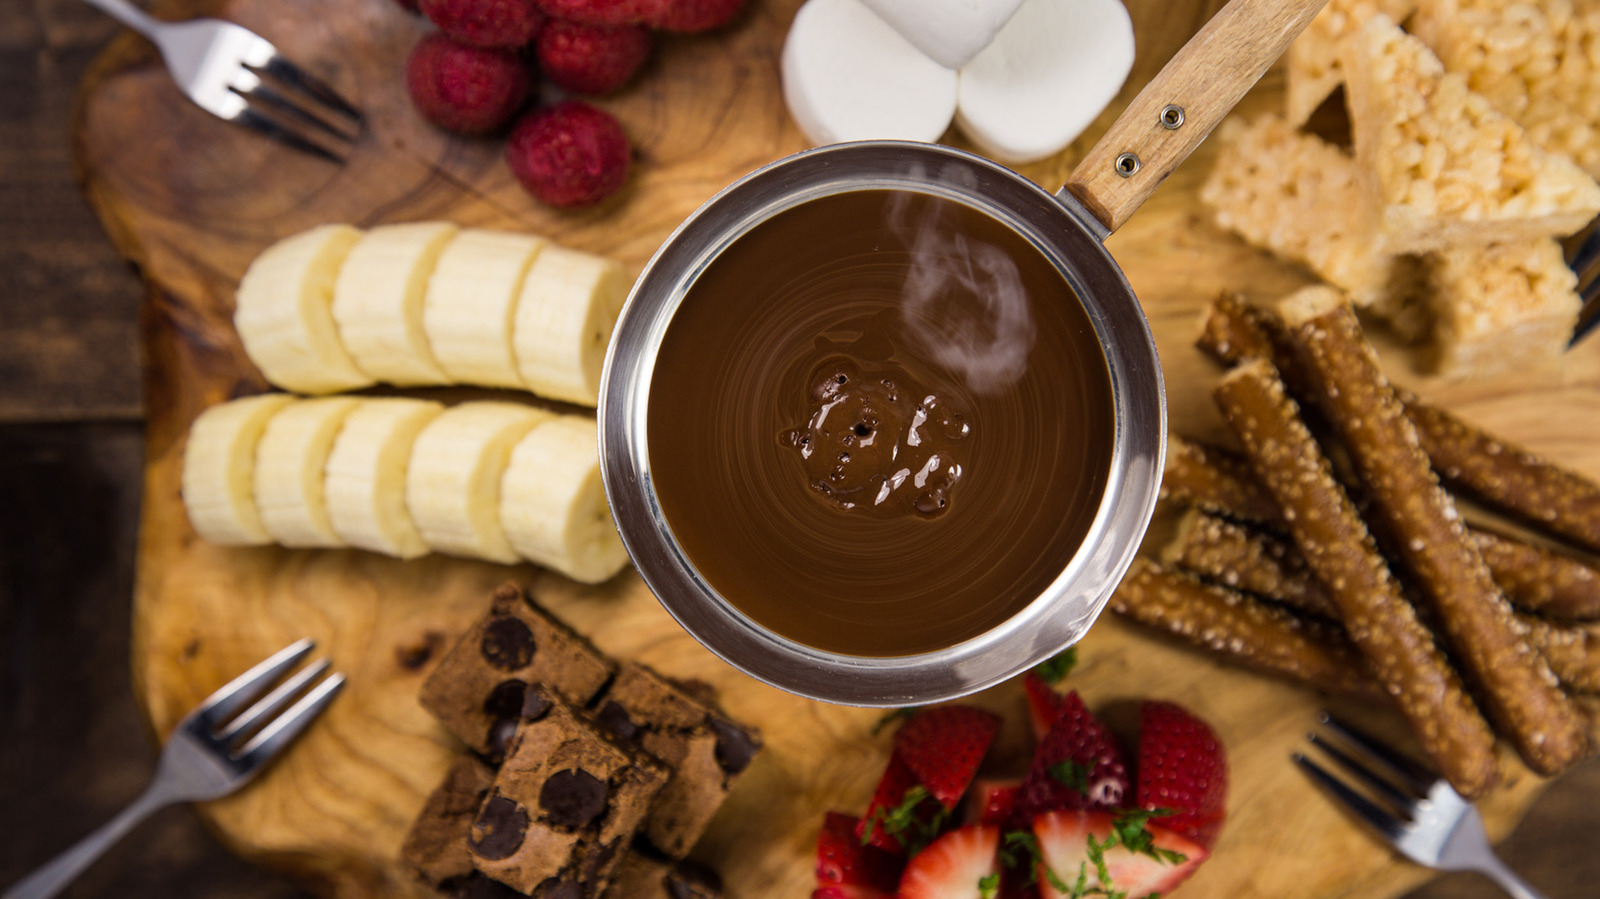 Best Ever Chocolate Fondue Recipe - The secret to the best recipe!